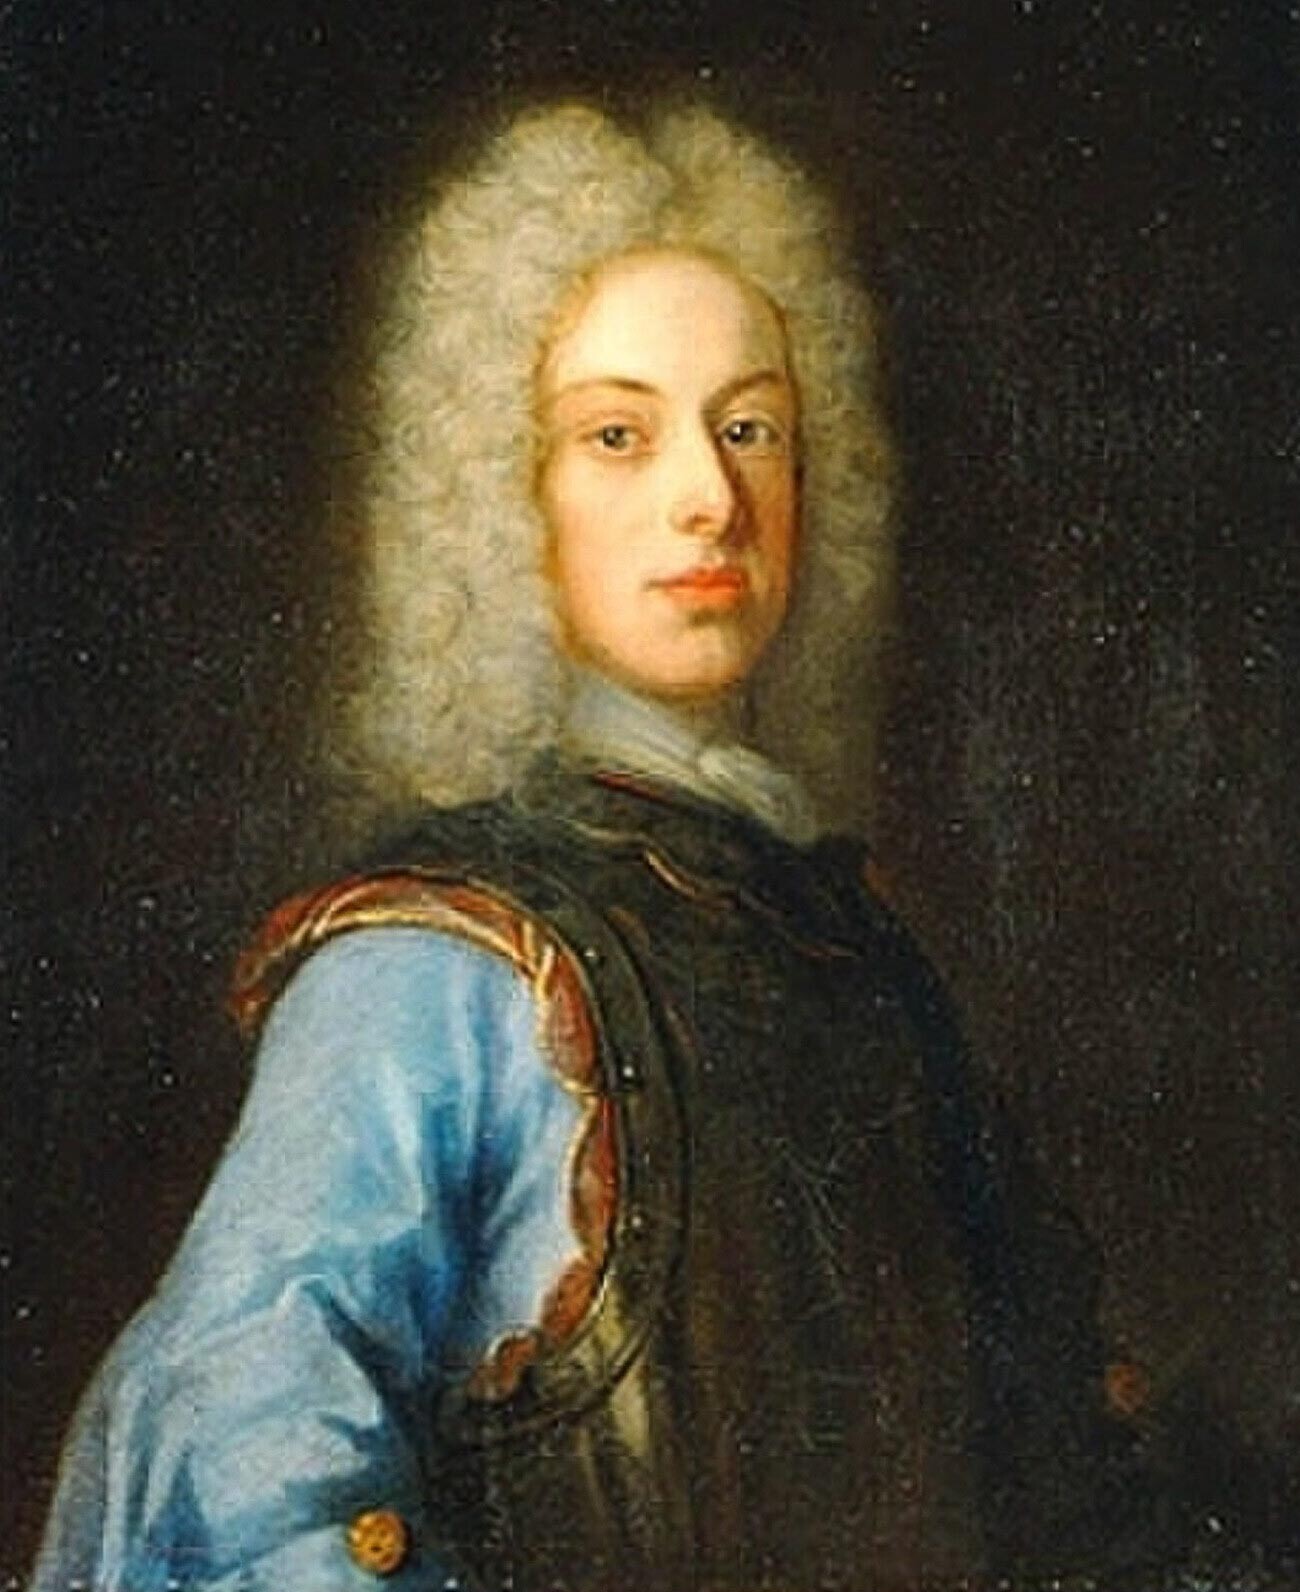 Porträt von Karl Friedrich von Holstein-Gottorp.